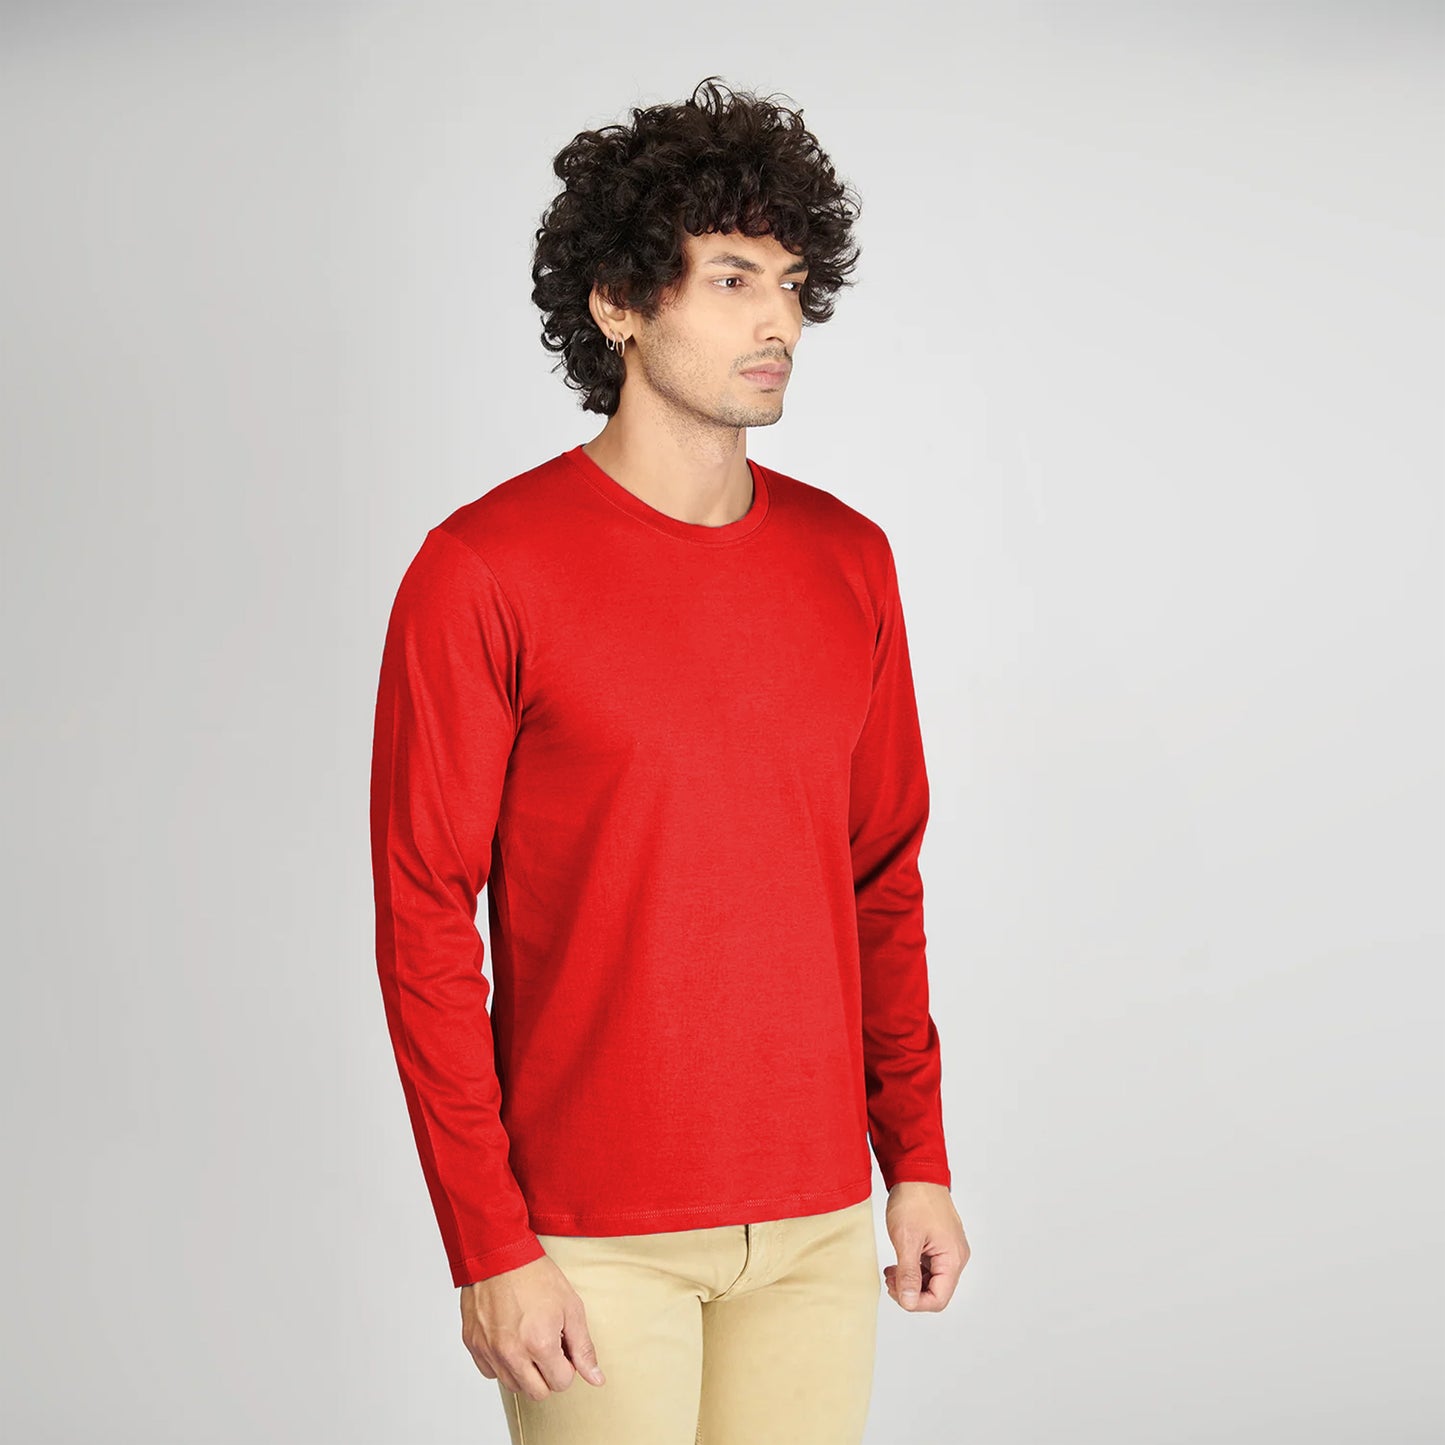 Basic Red Full Sleeves T-Shirt